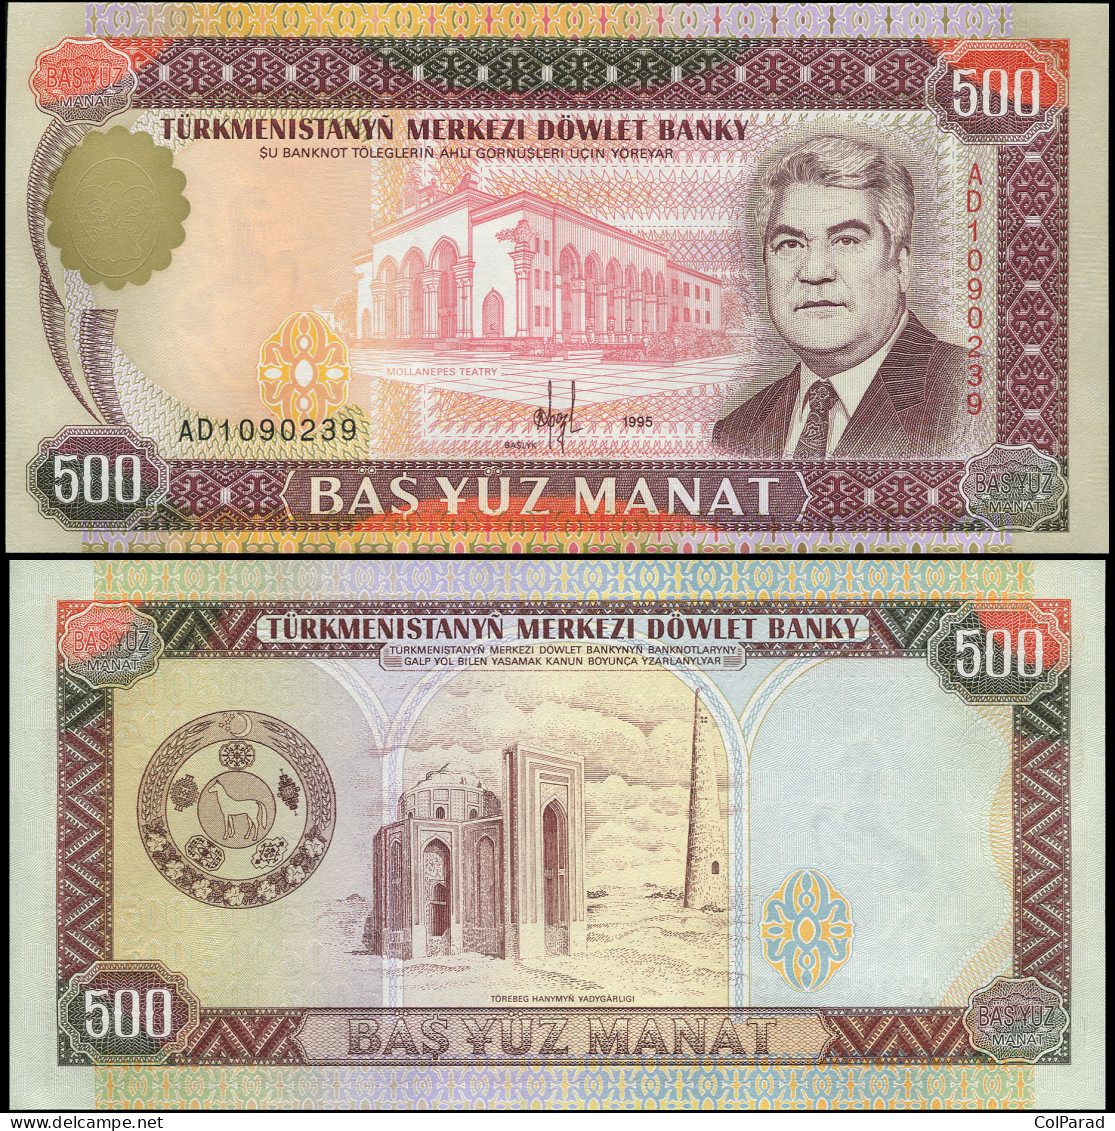 TURKMENISTAN 500 MANAT - 1995 - Paper Unc - P.7b Banknote - Turkménistan